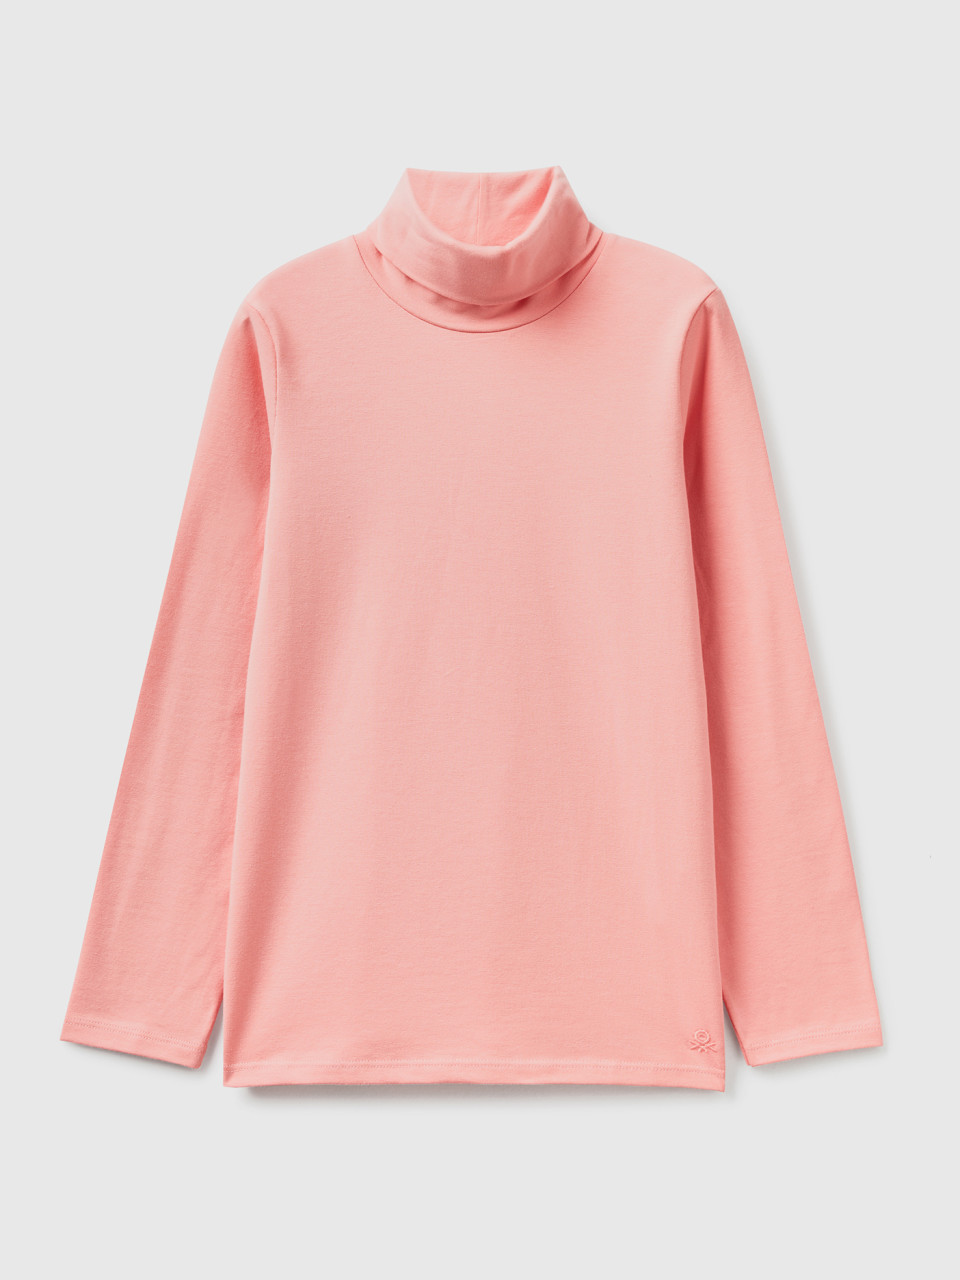 Benetton, Stretchiges T-shirt Mit Hohem Kragen, Pink, female